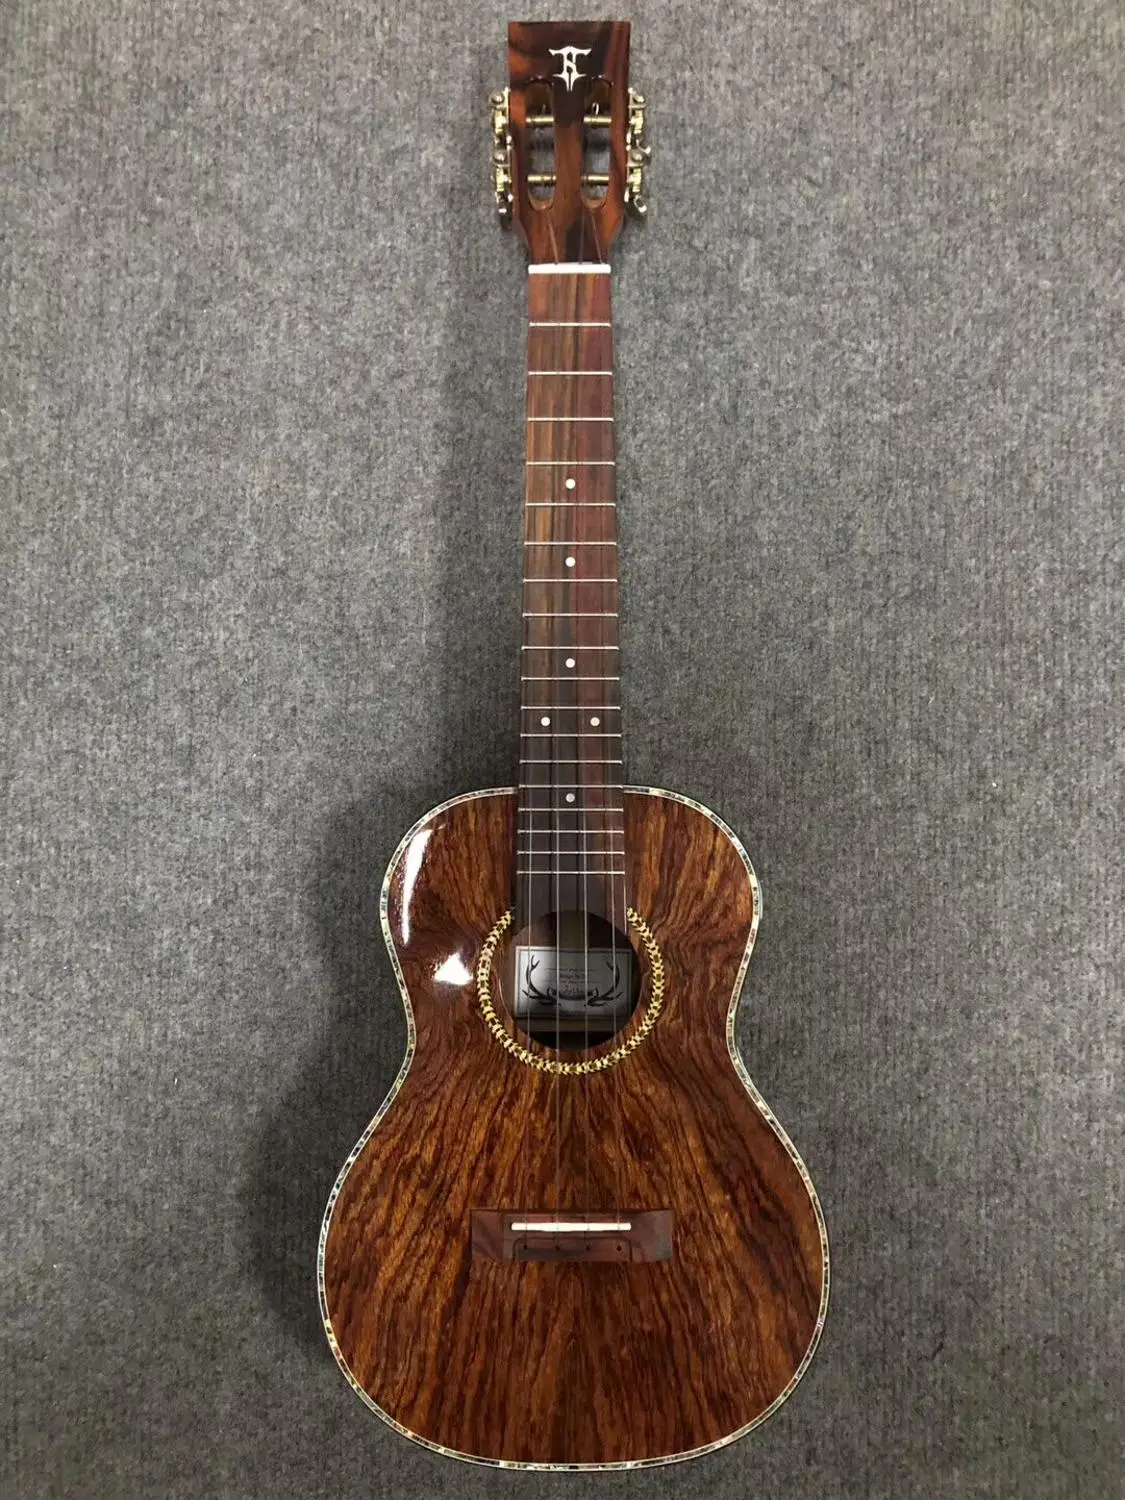 26-дюймовый палисандр все-в-одном, миниатюрная гитара укулеле Гавайская 4-струнная Гитары инструмент, по одной в каждом углу